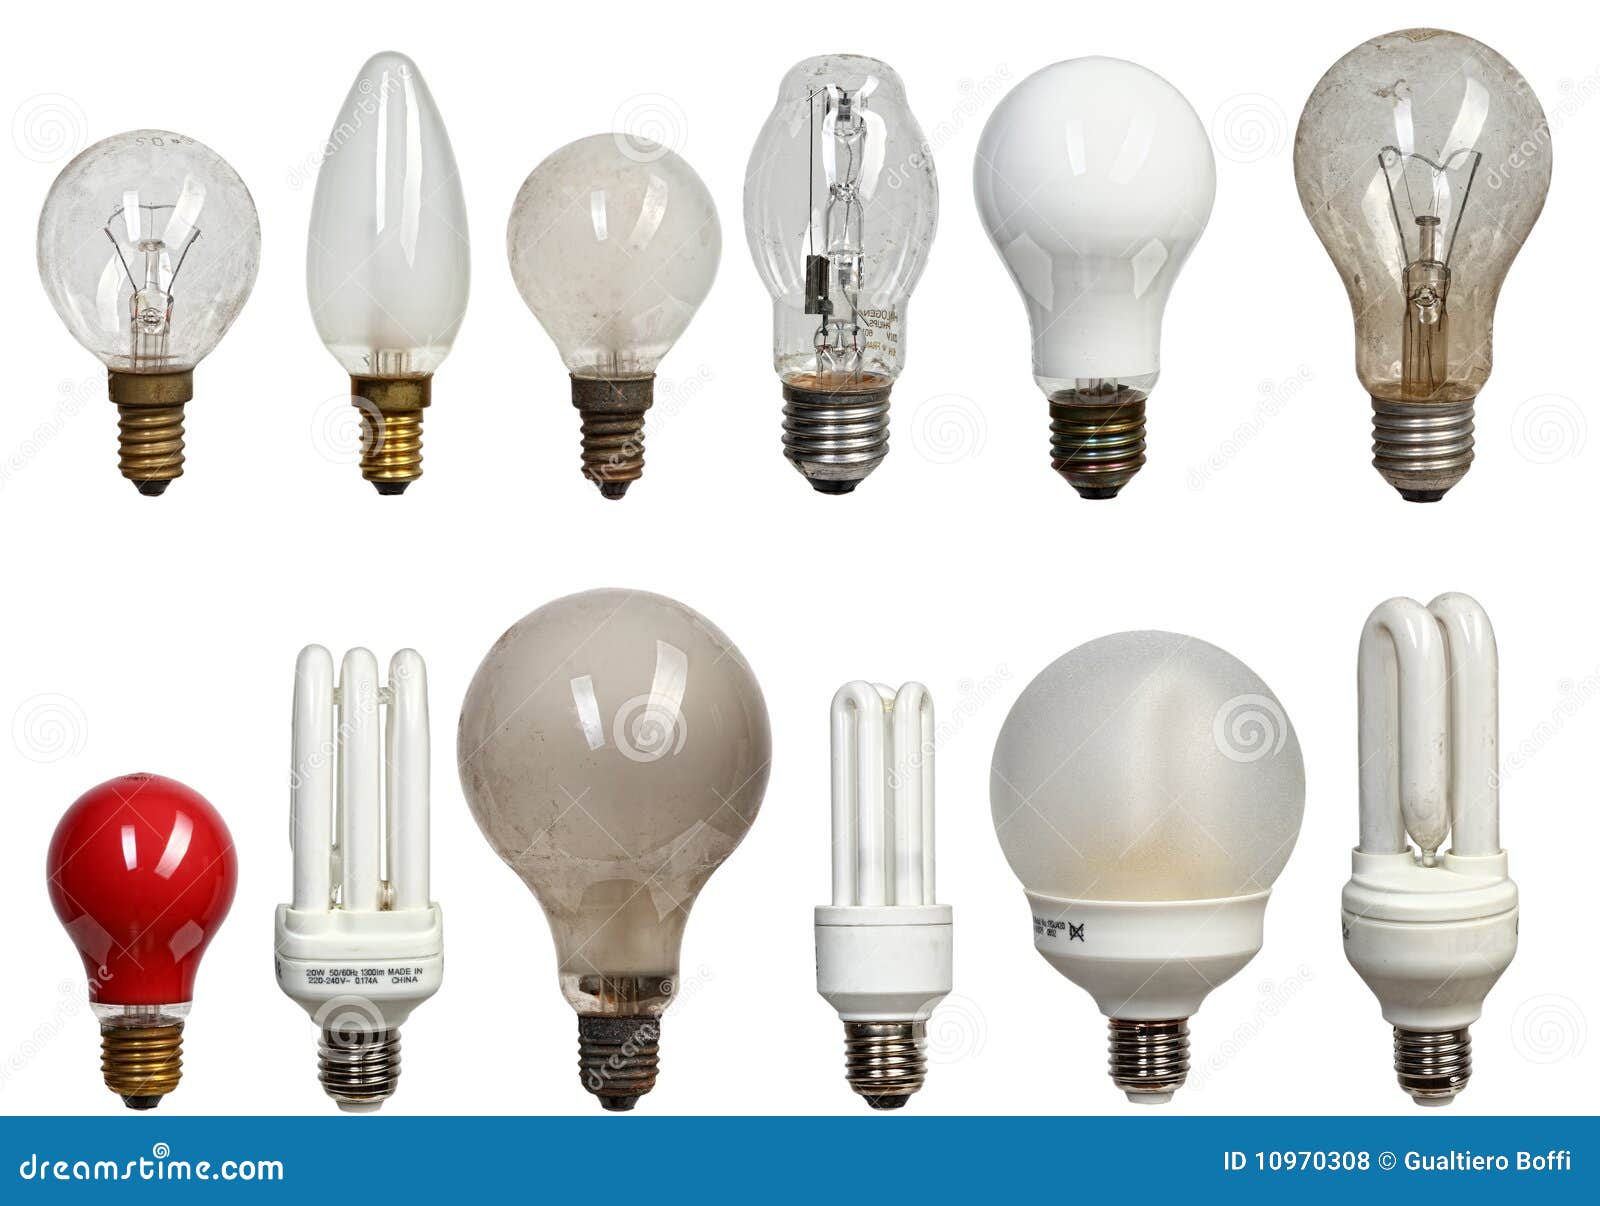 Источник света в лампочке. Осветительные приборы (лампы светодиодные led) 18 WMF. Электрическая лампа. Современная лампа накаливания. Формы лампочек накаливания.